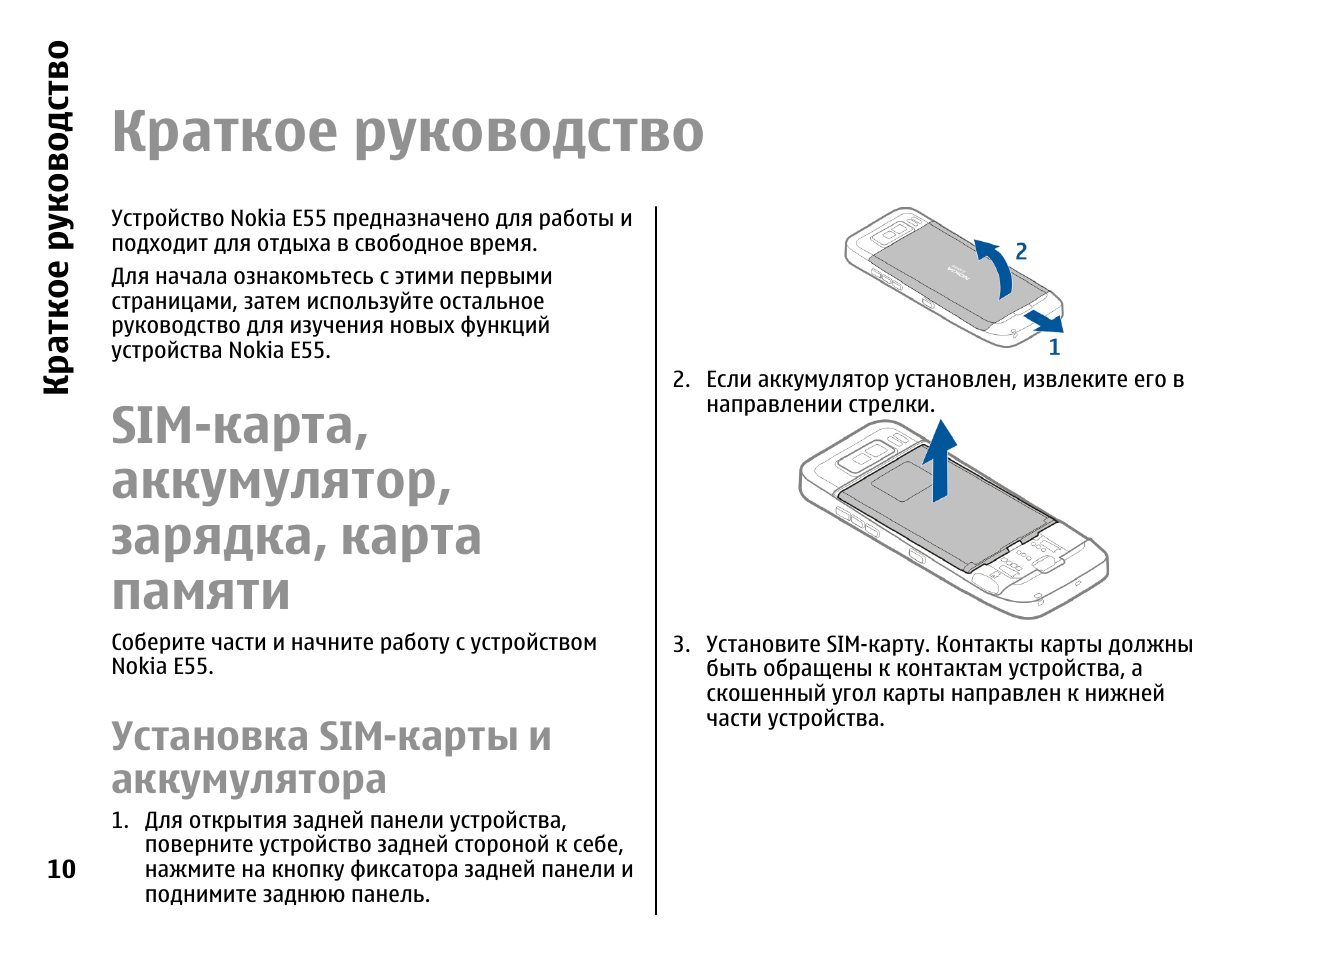 Телефон нокиа устройство. Инструкция на аккумуляторные батареи. Nokia e52 характеристики. Инструкция Nokia e65. Технологическая карта зарядка аккумулятора.